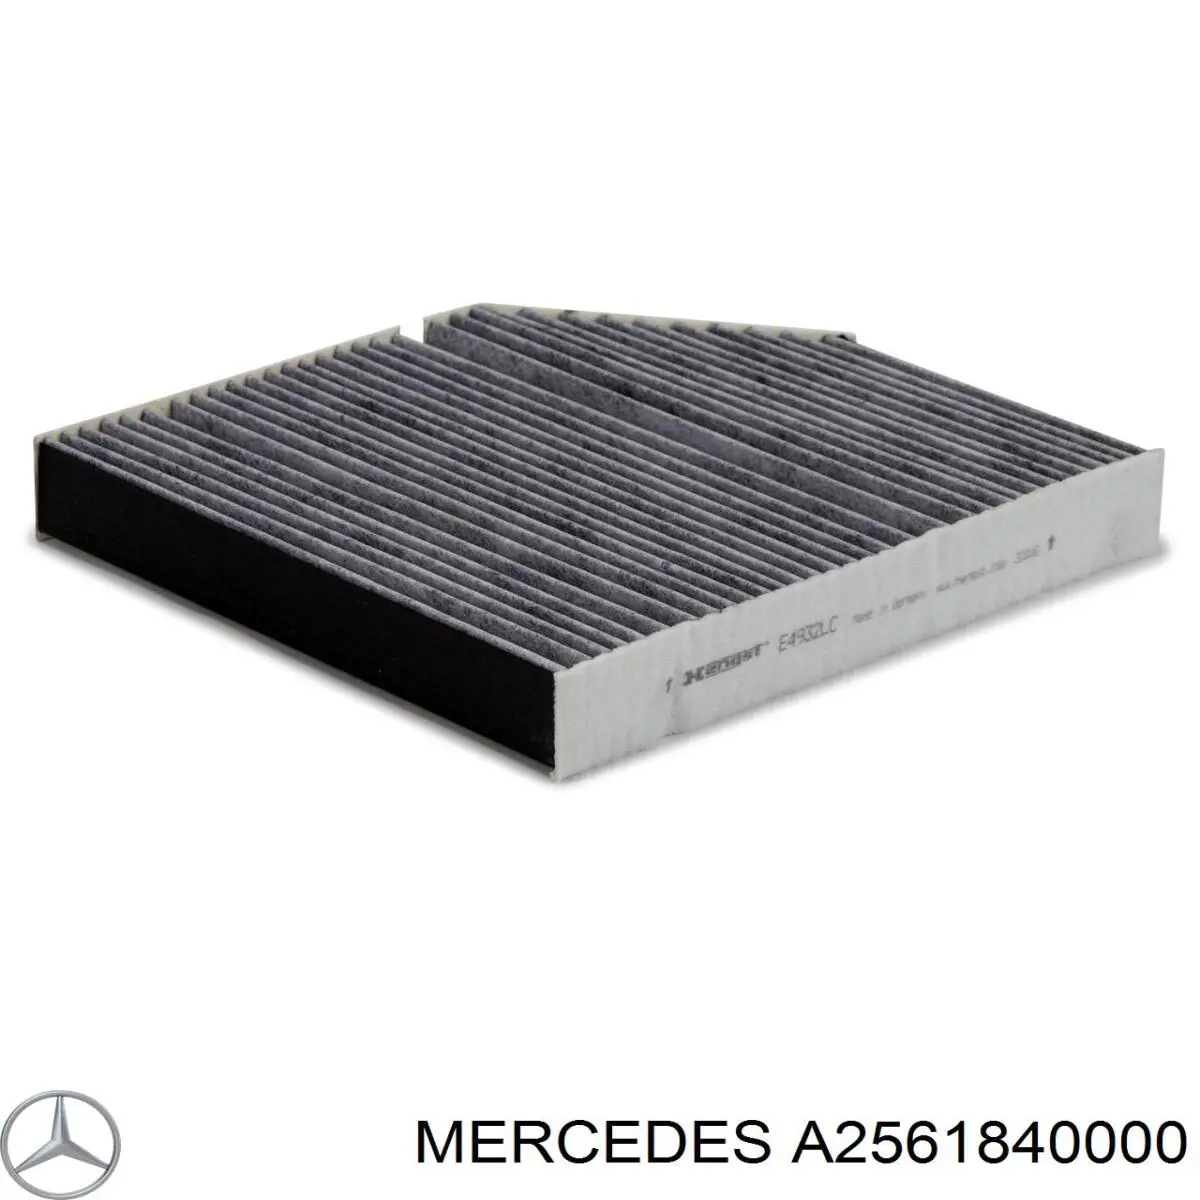 A2561840000 Mercedes filtro de aceite